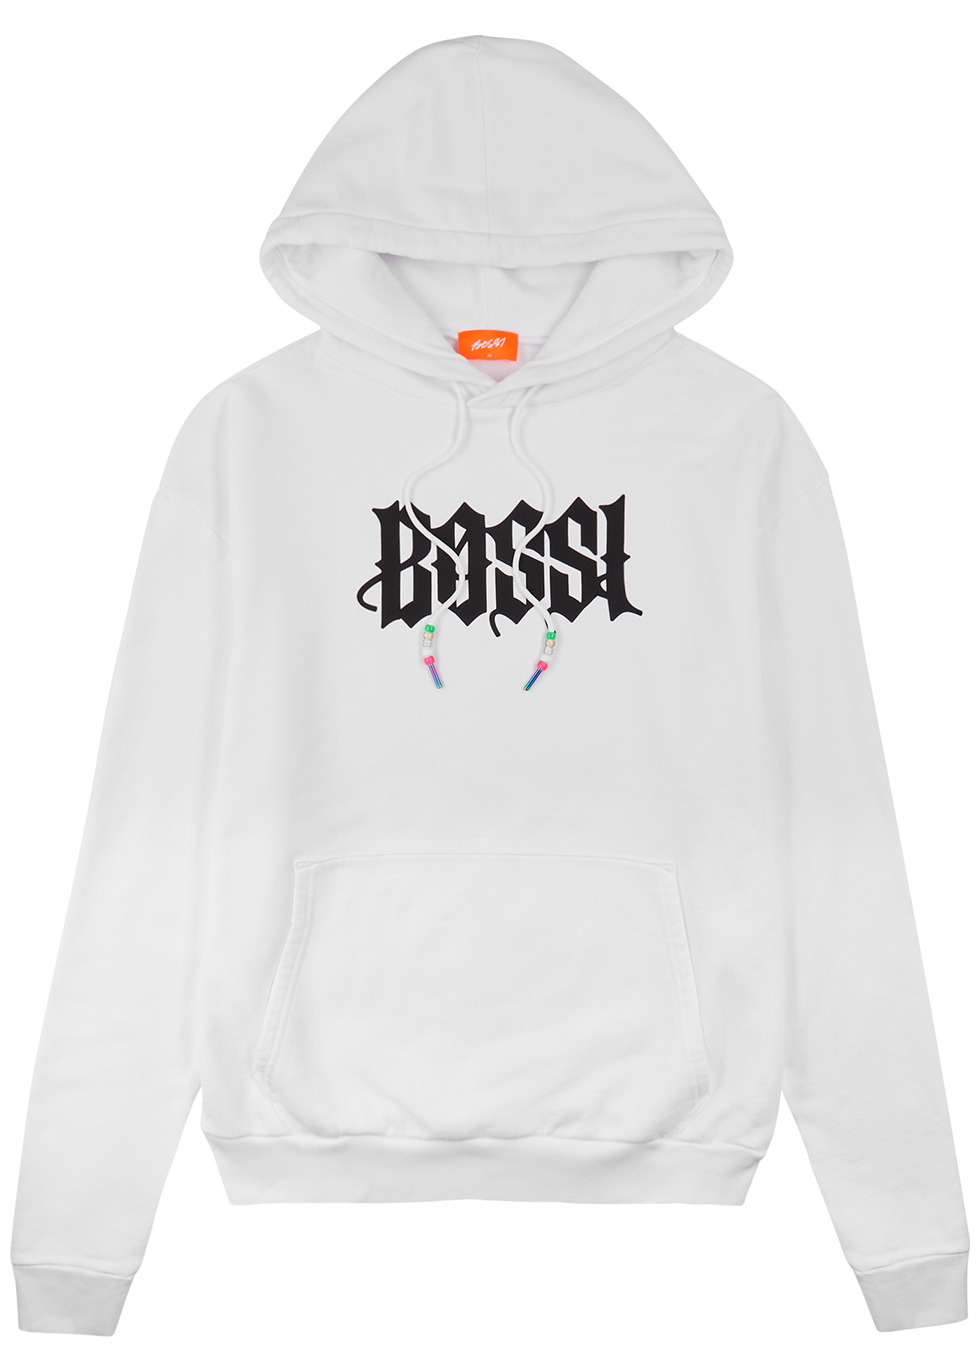 BOSSI Sportswear White logo hooded cotton sweatshirt